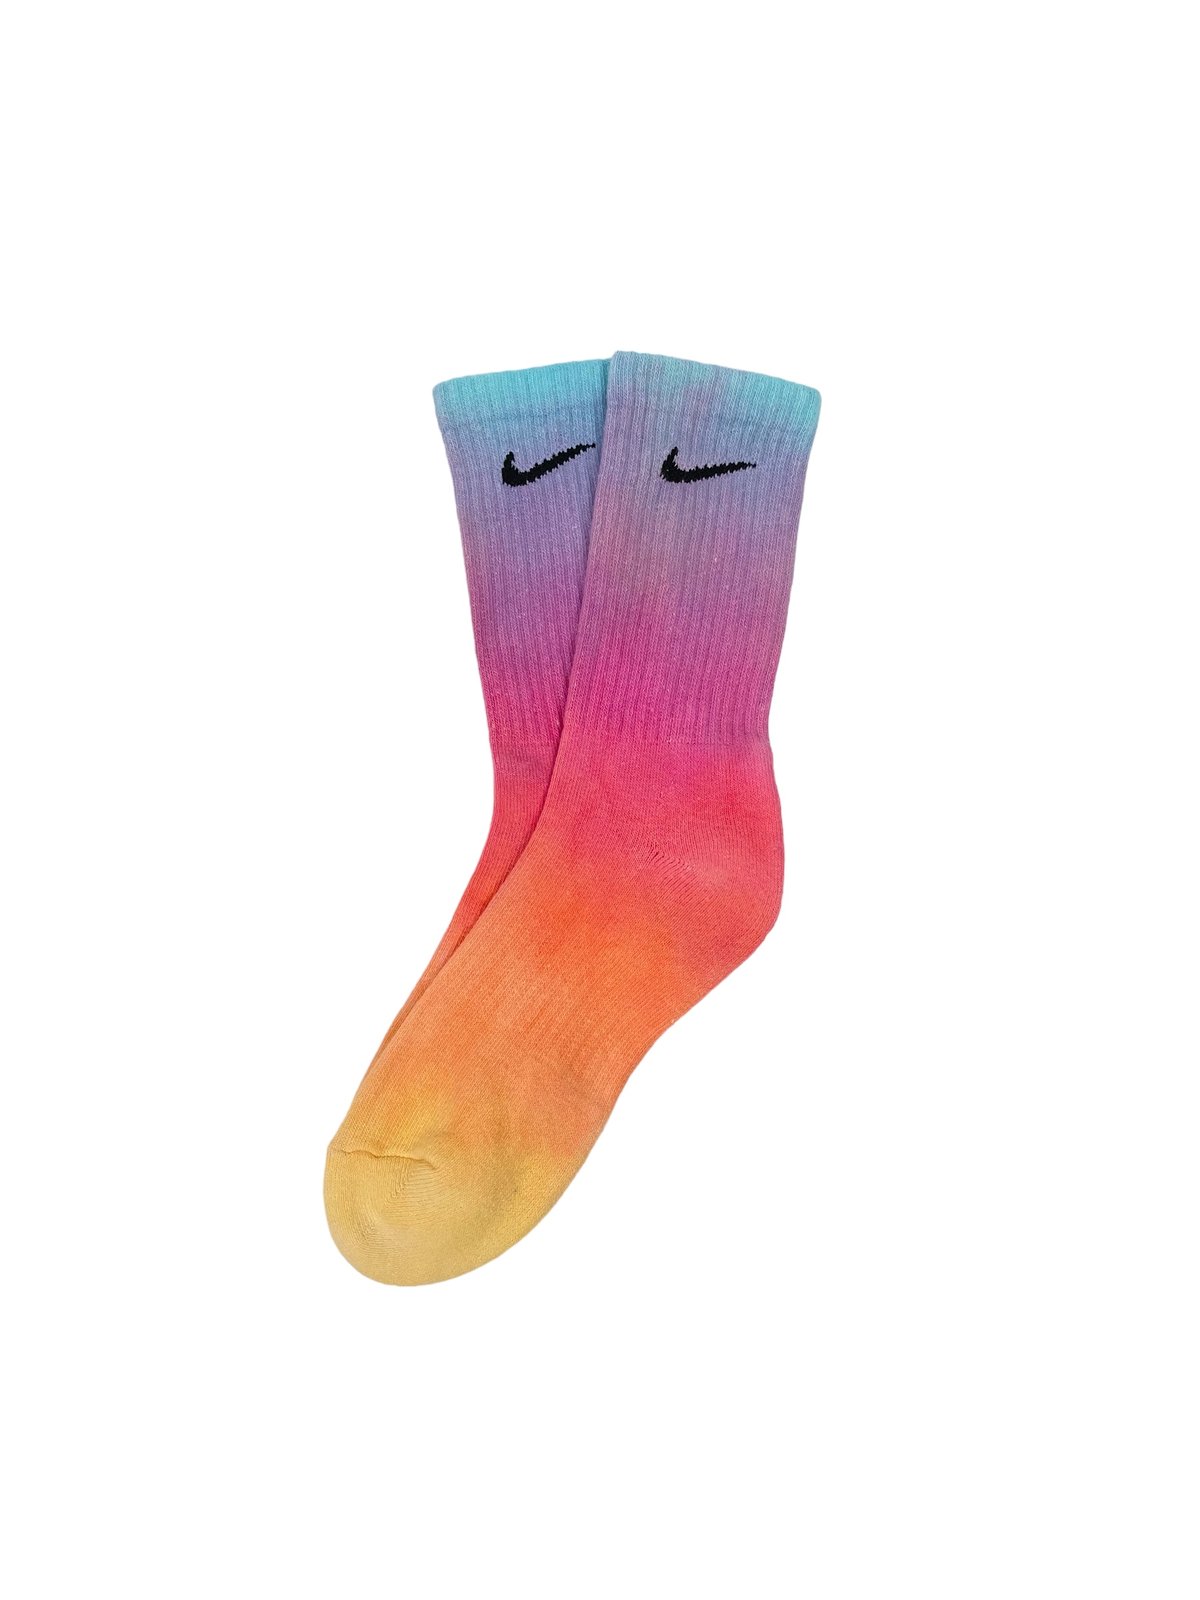 Image of Nike Socks Dyed Sunset Pack